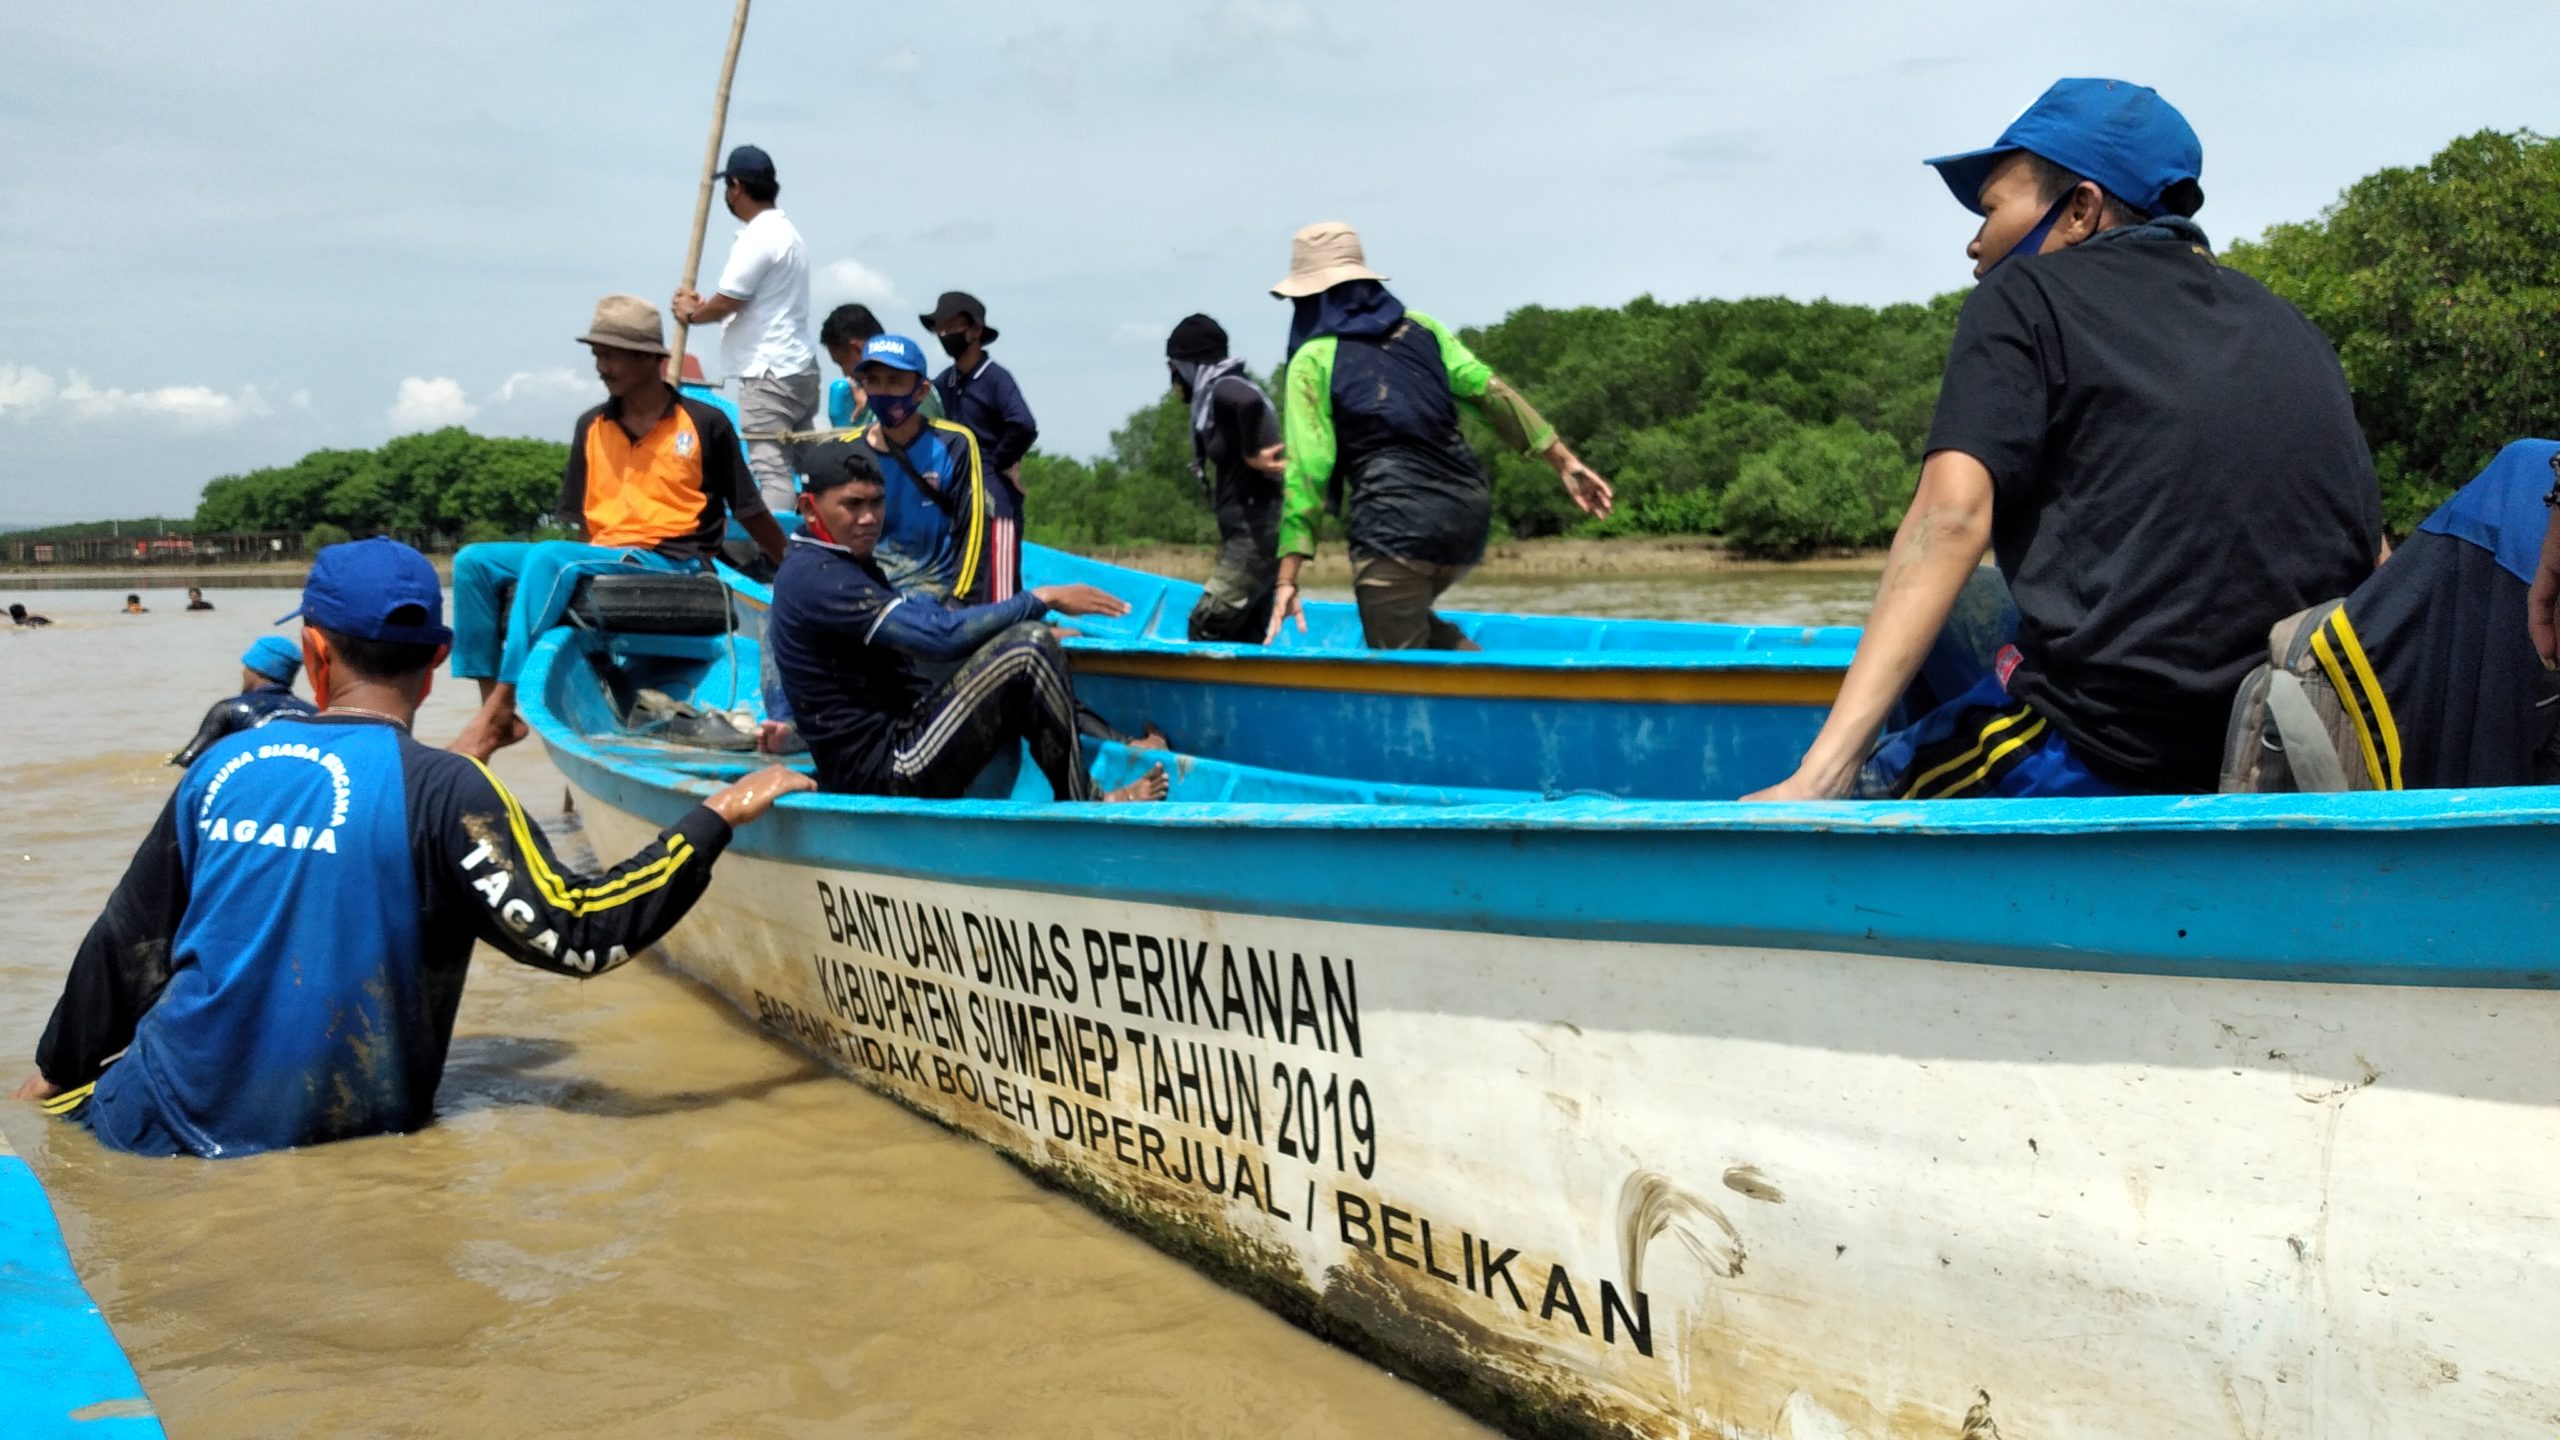 Menuju ke lokasi tanam mangrove menggunakan perahu. Foto: M Tamimi/ Mongabay Indonesia